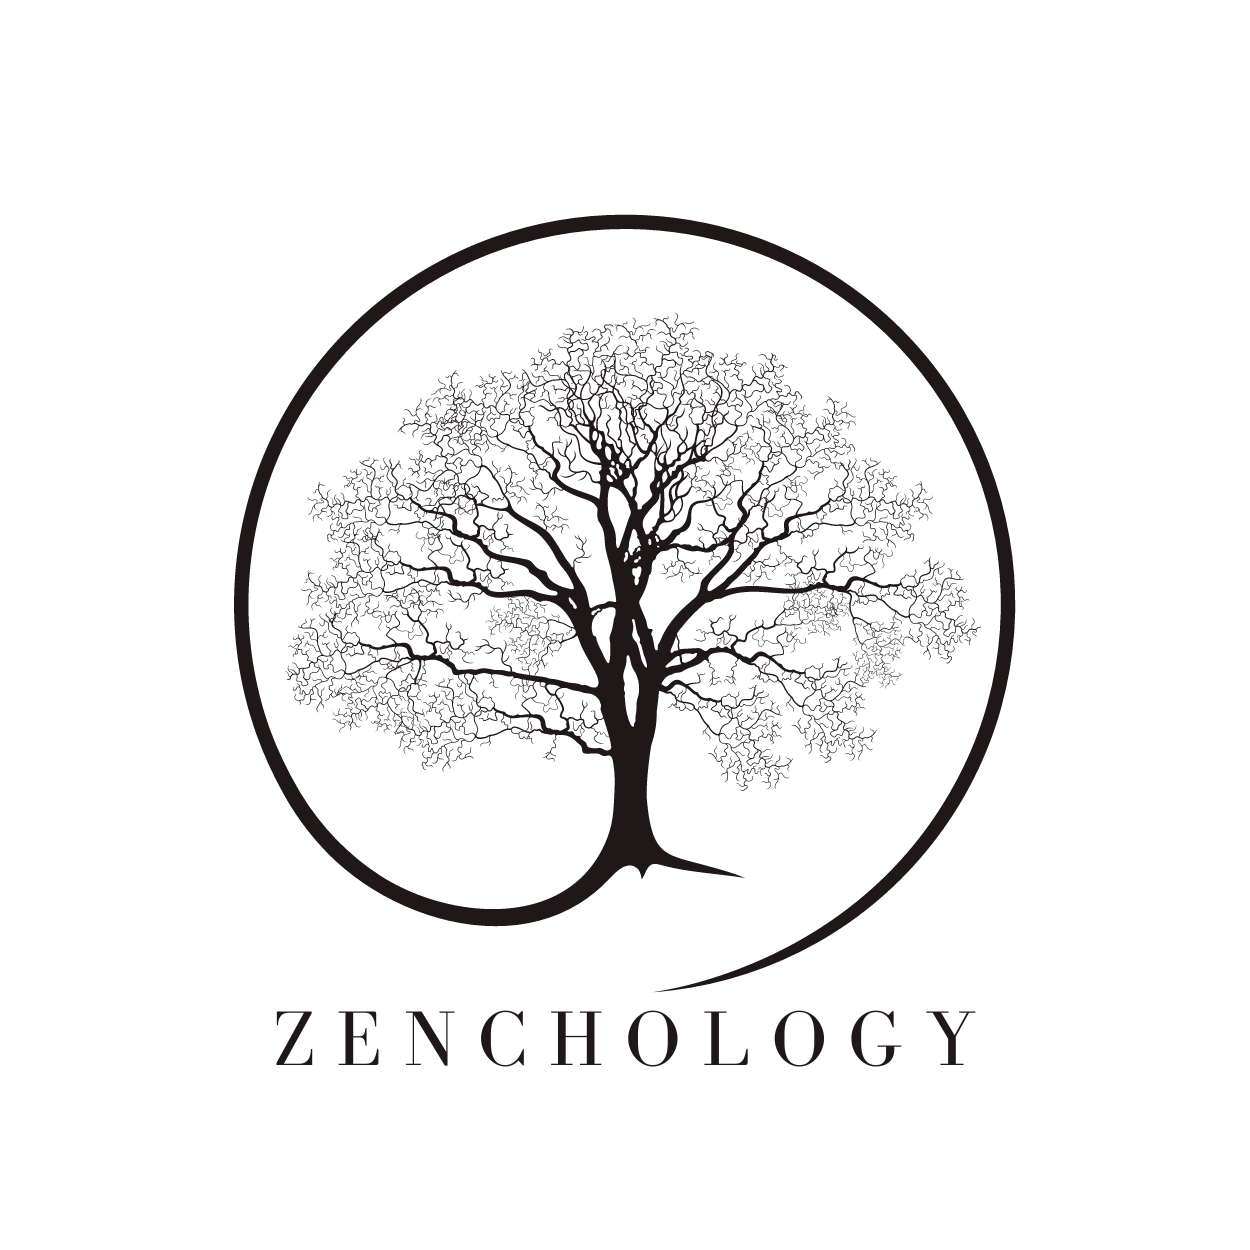 Zenchology